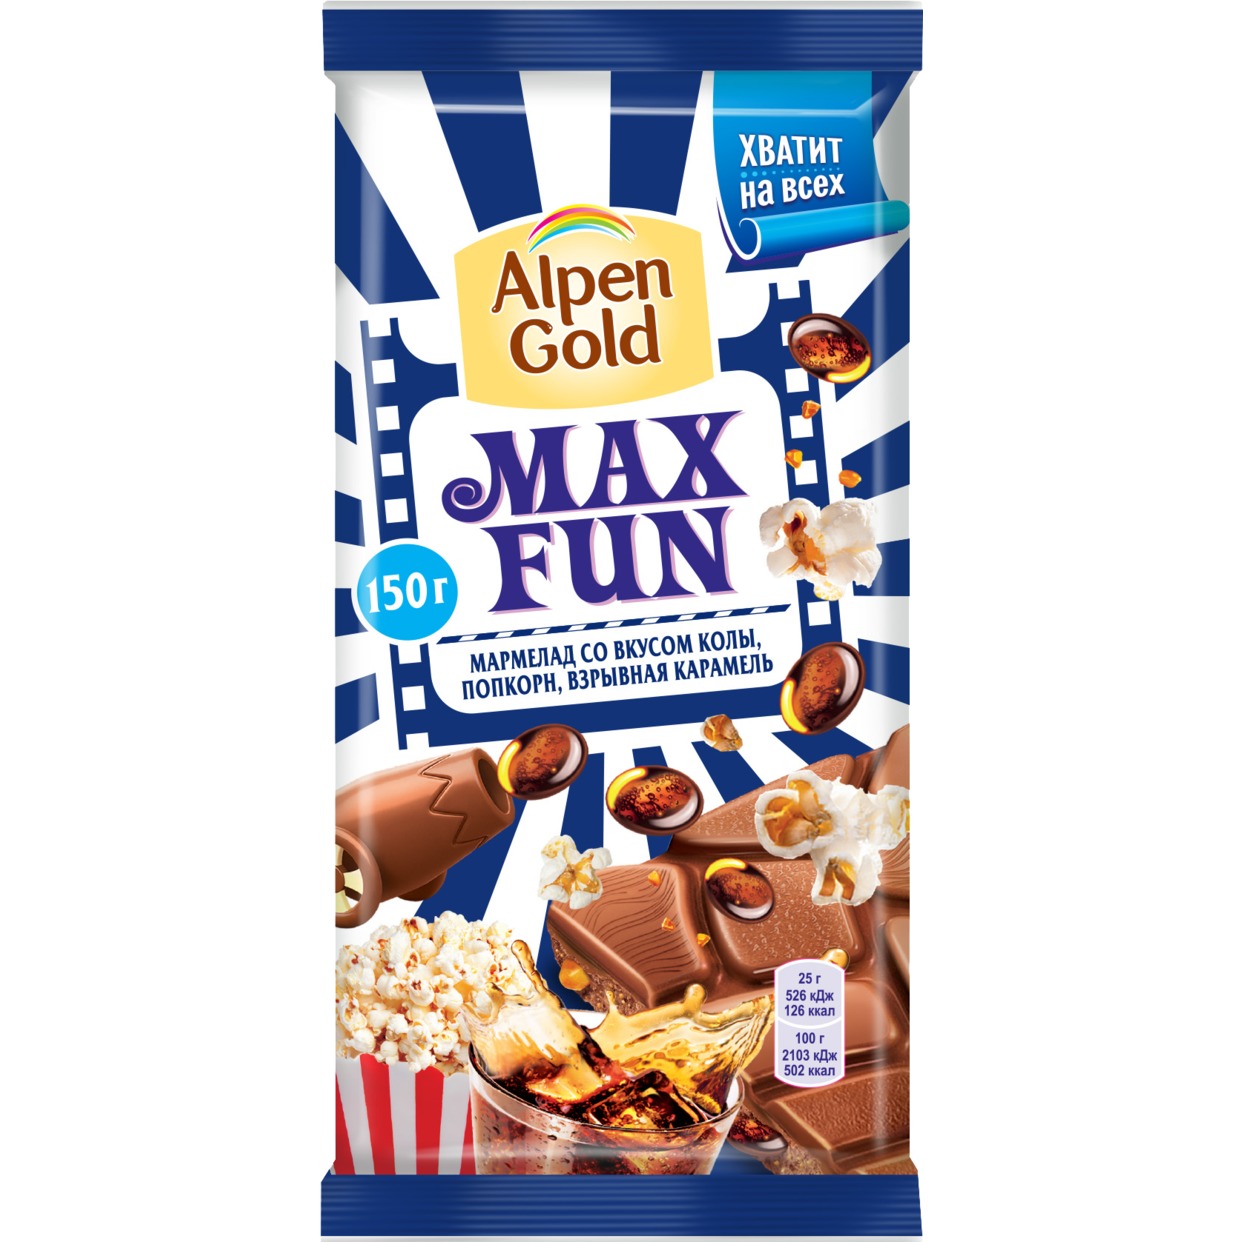 Шоколад молочный Alpen Gold Альпен Гольд Максфан с мармеладом со вкусом колы, попкорном и взрывной карамелью, 150г по акции в Пятерочке